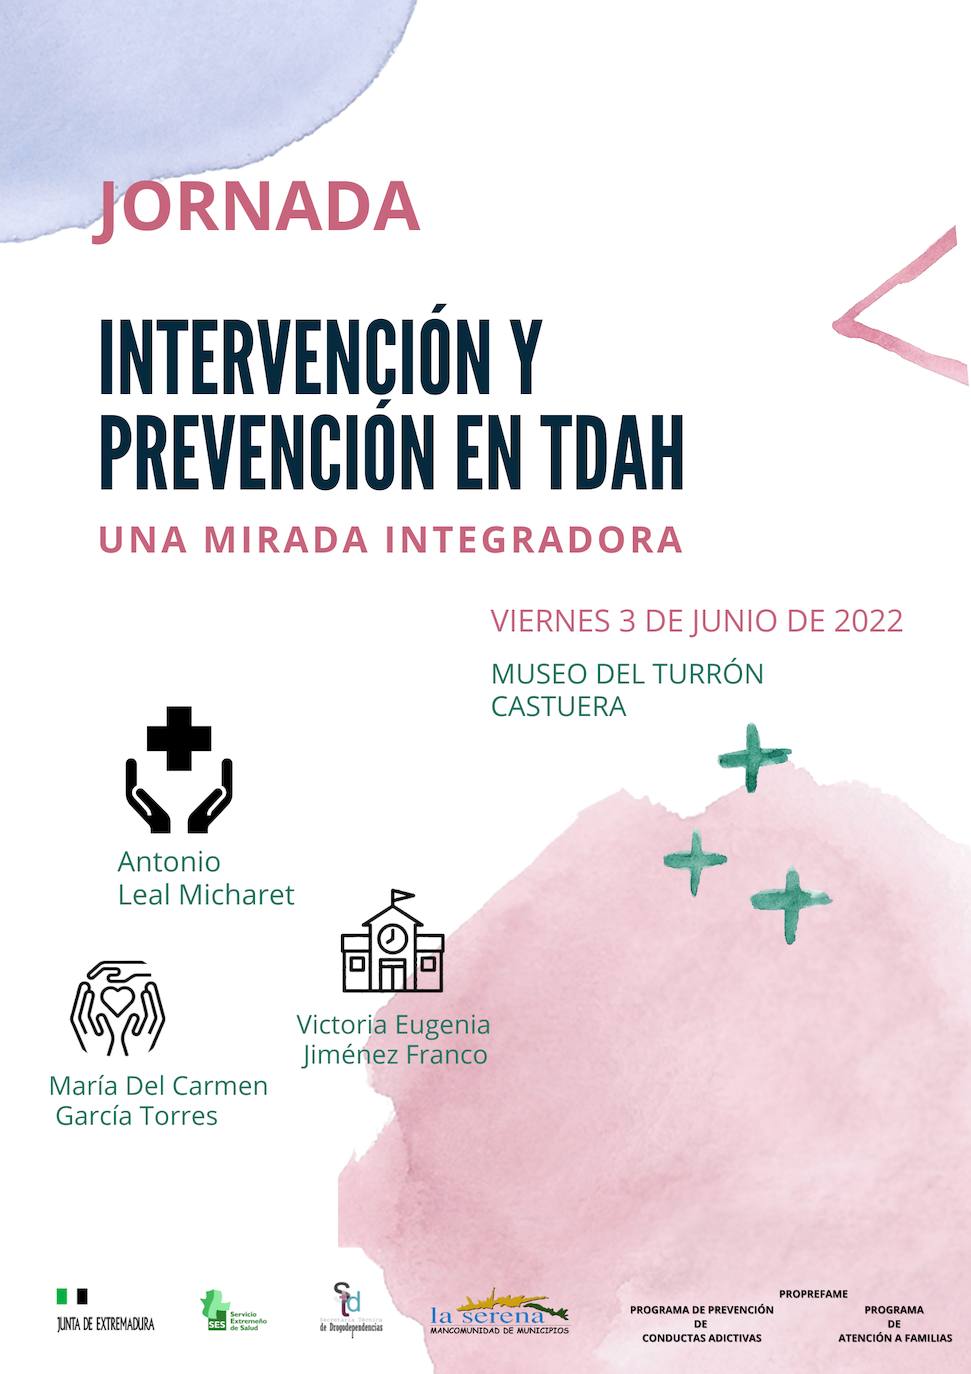 El Museo del Turrón acoge una jornada sobre 'Intervención y Prevención en TDAH' mañana viernes